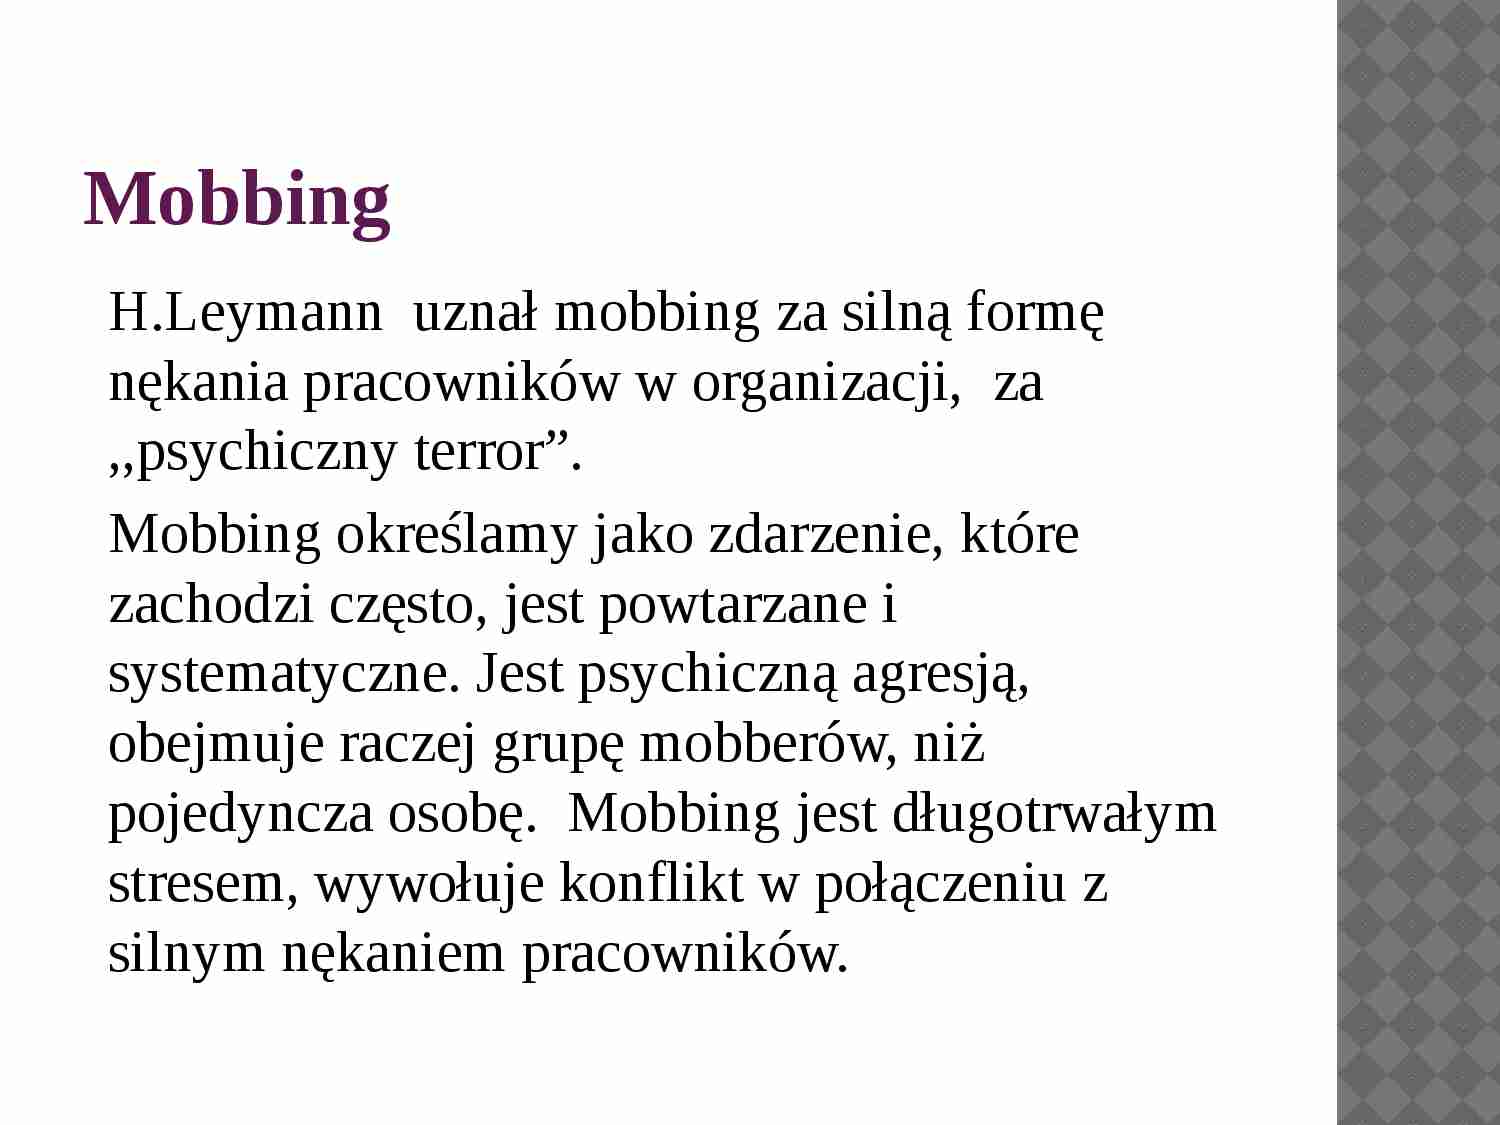 Mobbing w organizacji - prezentacja - strona 1